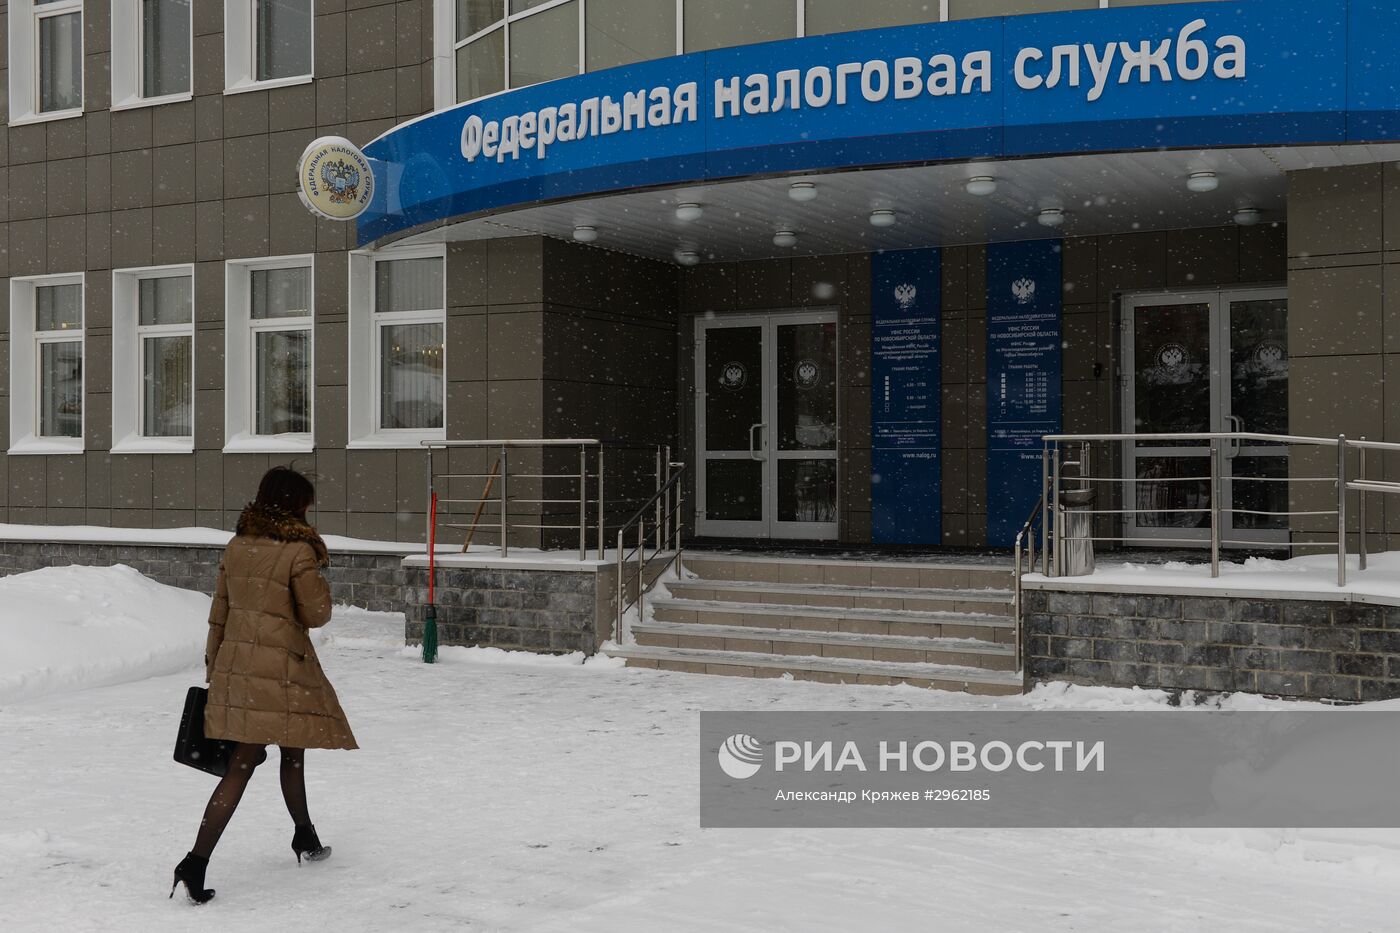 Инспекция Федеральной налоговой службы РФ в Новосибирске